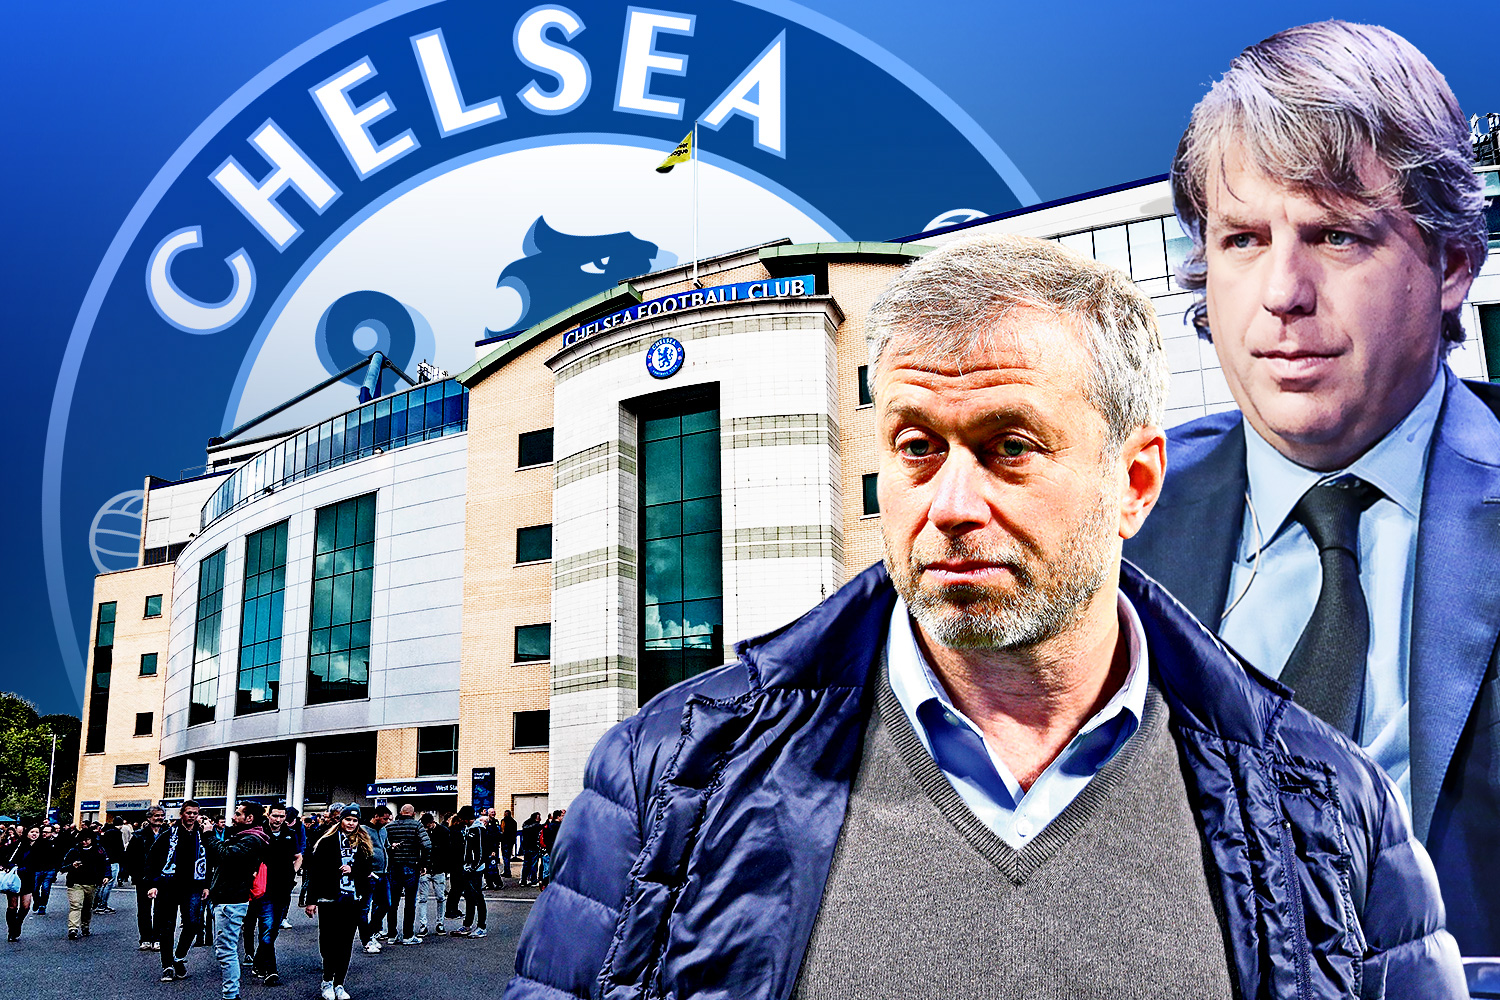 Chelsea £4.25 billion takeover